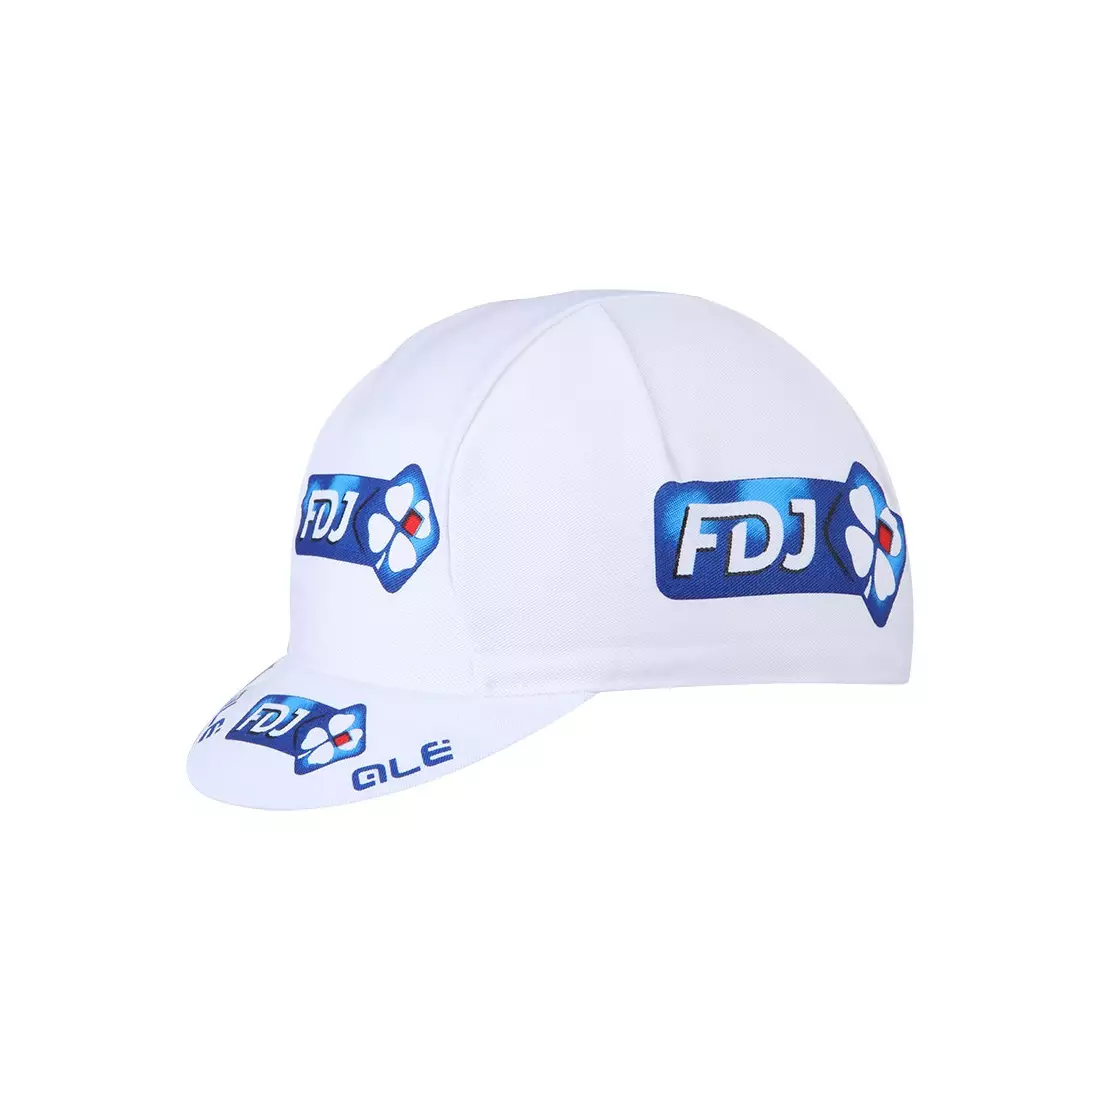 Apis Profi FDJ cycling cap, white